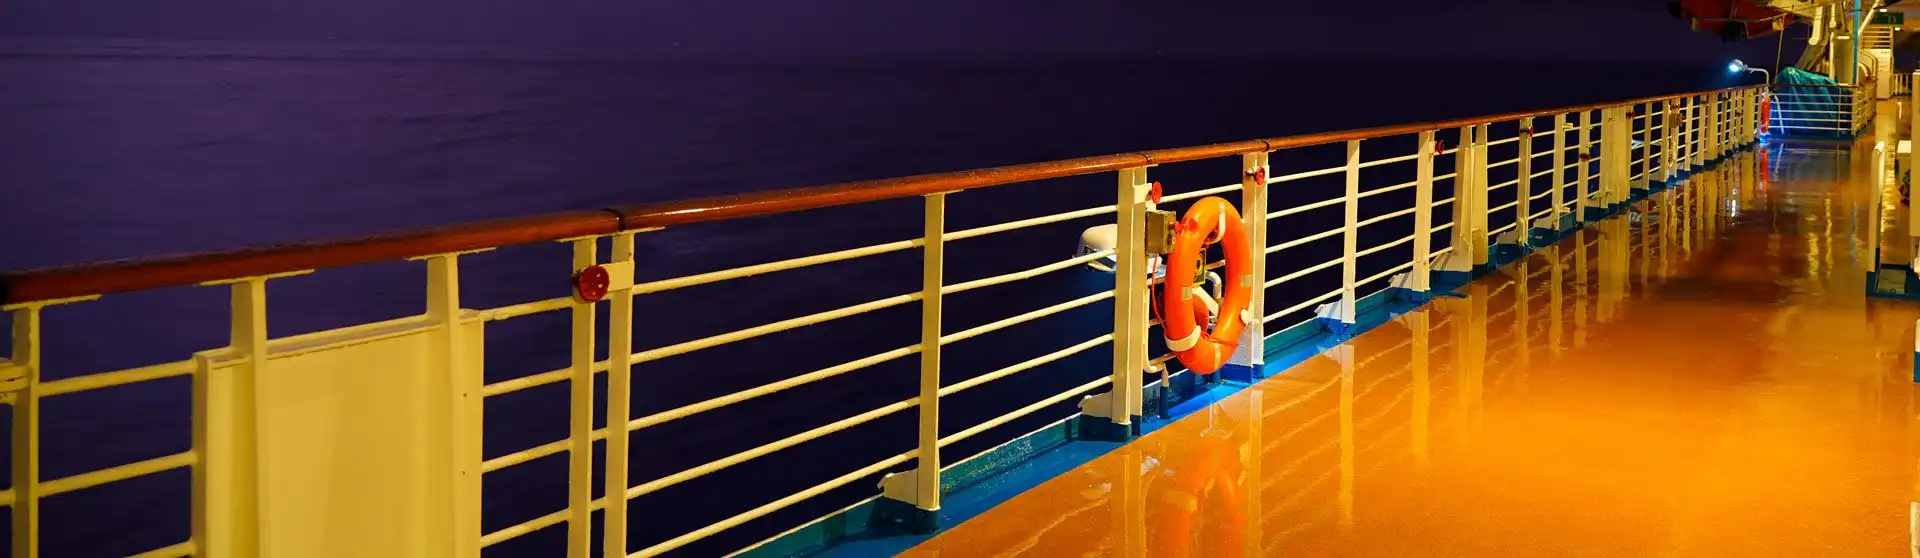 SafetyAtSea-Cruise.jpg